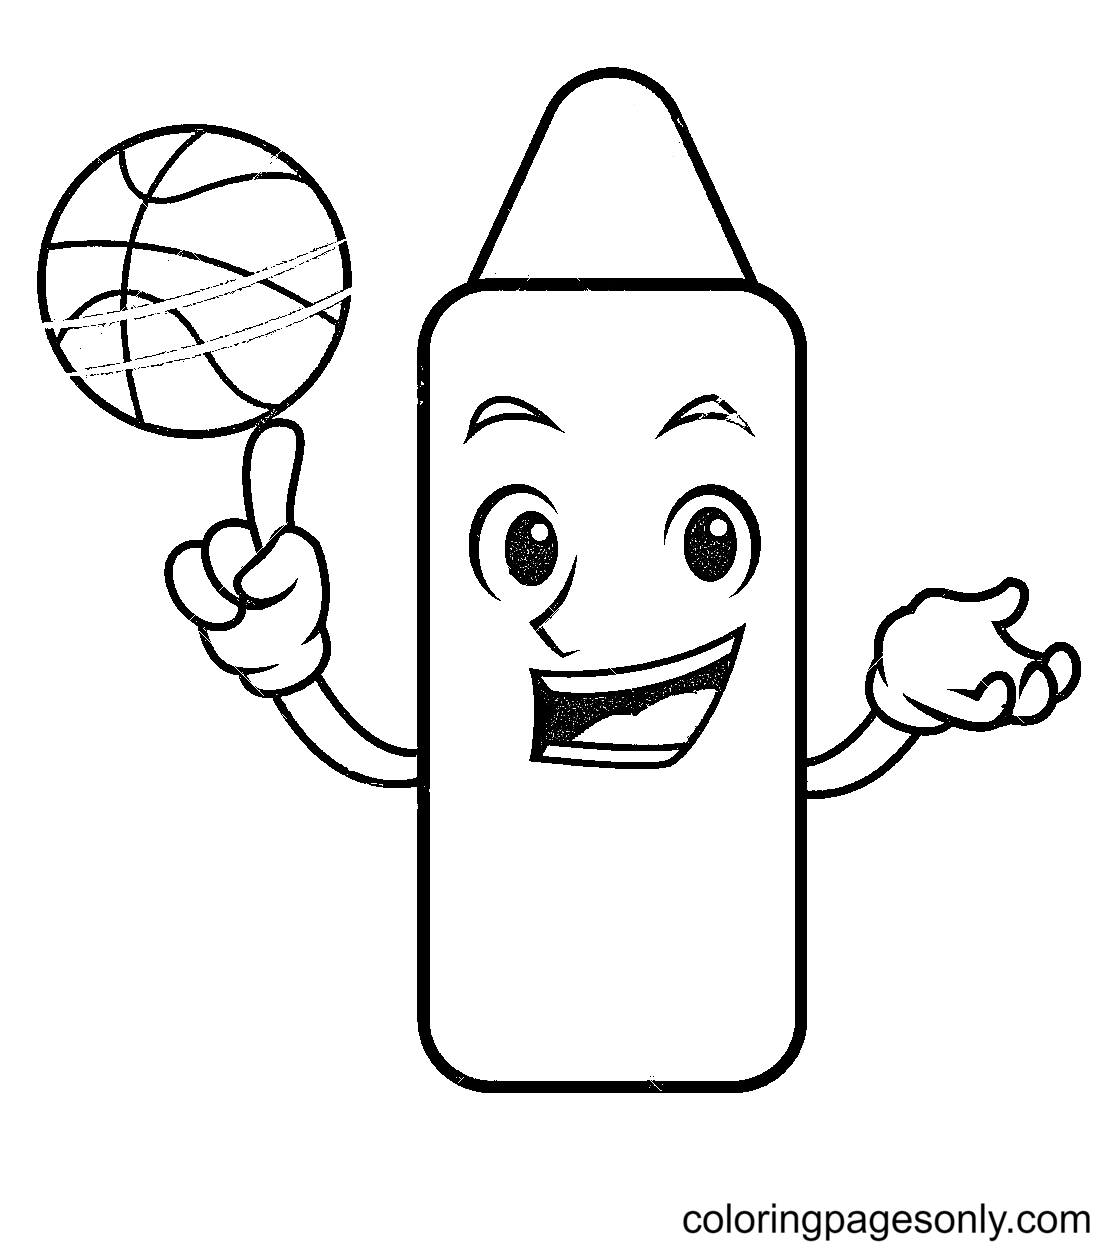 Раскраска Мел с баскетбольным мячом